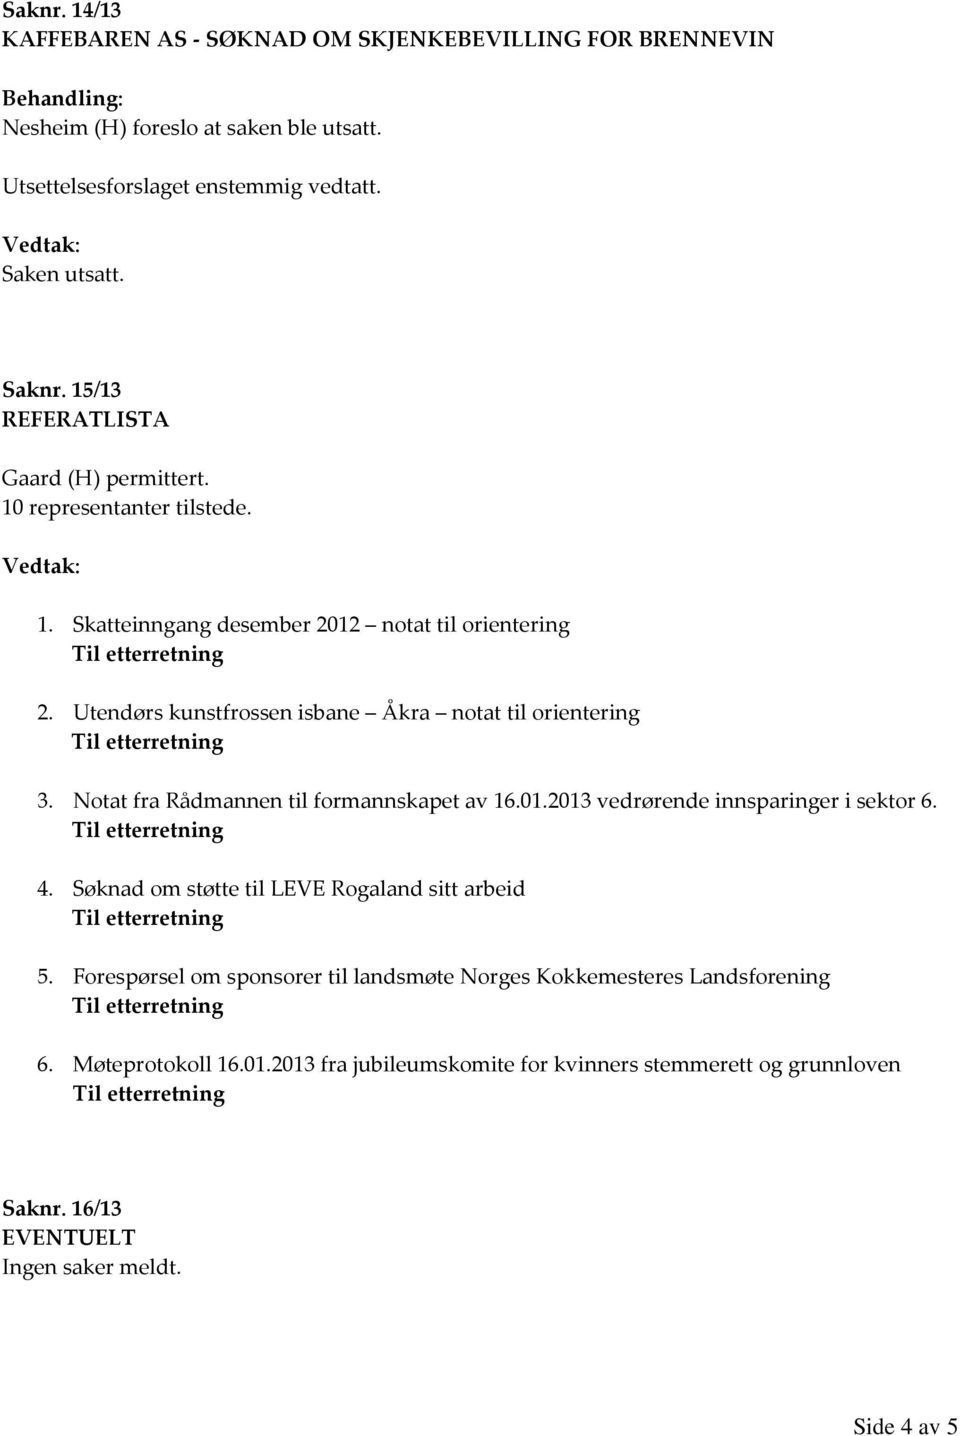 Utendørs kunstfrossen isbane Åkra notat til orientering 3. Notat fra Rådmannen til formannskapet av 16.01.2013 vedrørende innsparinger i sektor 6. 4.